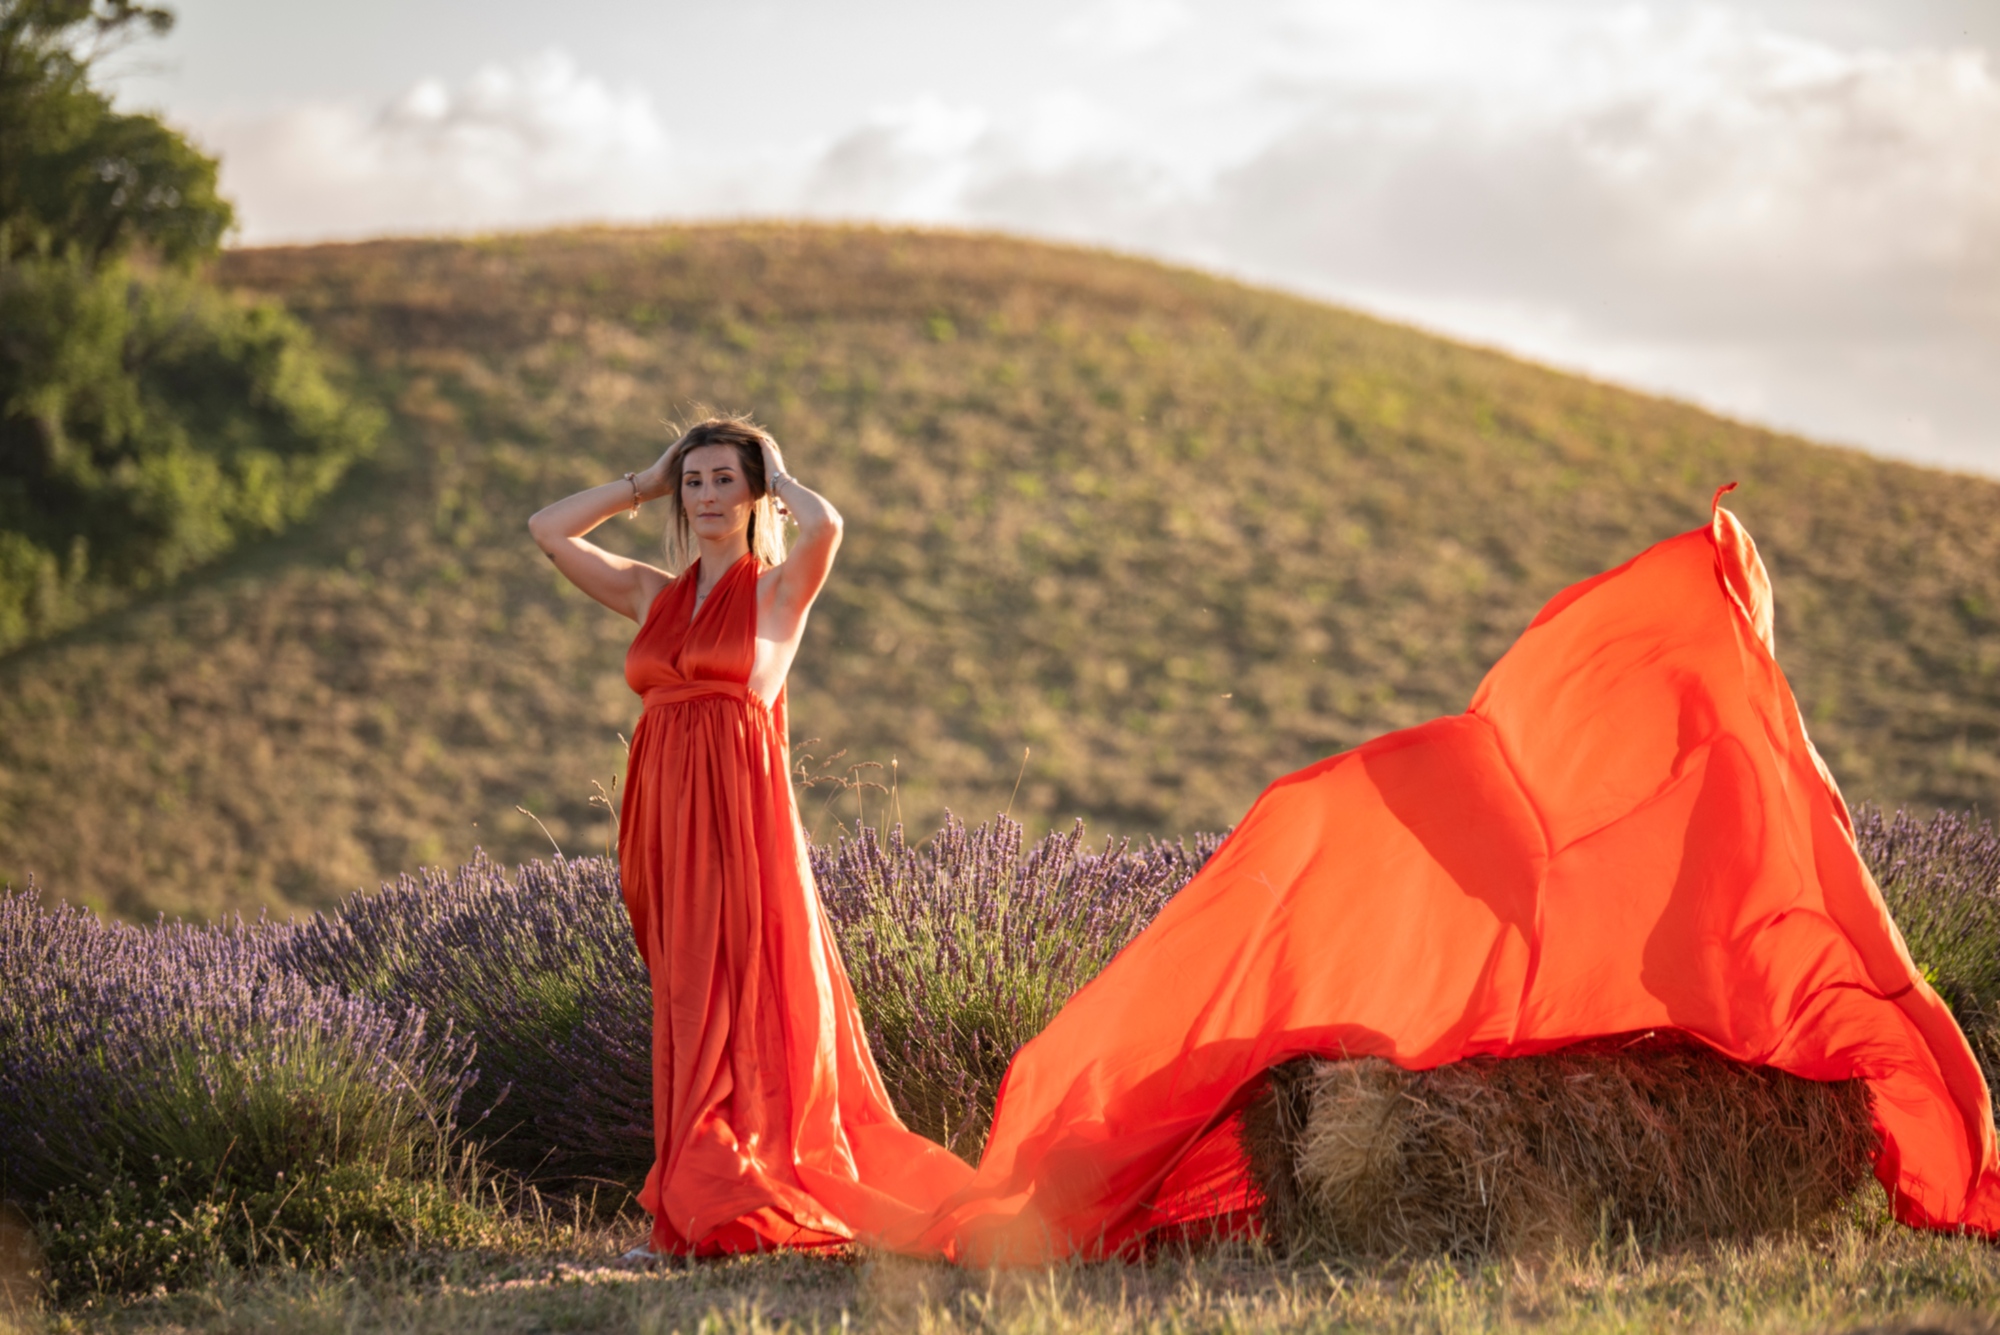 Séance photo dans la campagne toscane avec une robe volante